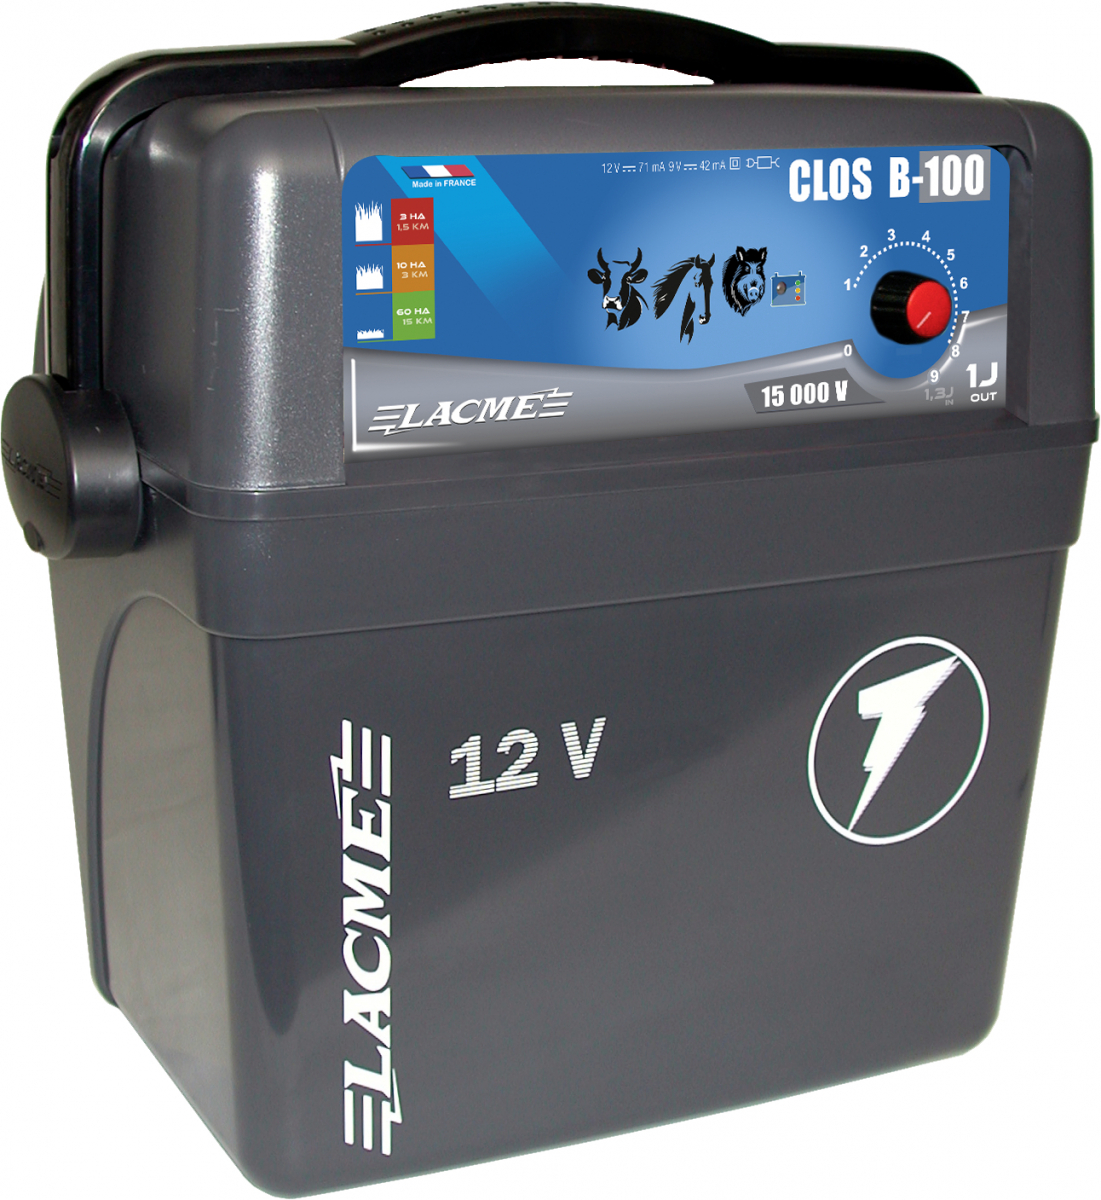 Électrificateur CLOS B100, 12 volts 1 joule en sortie